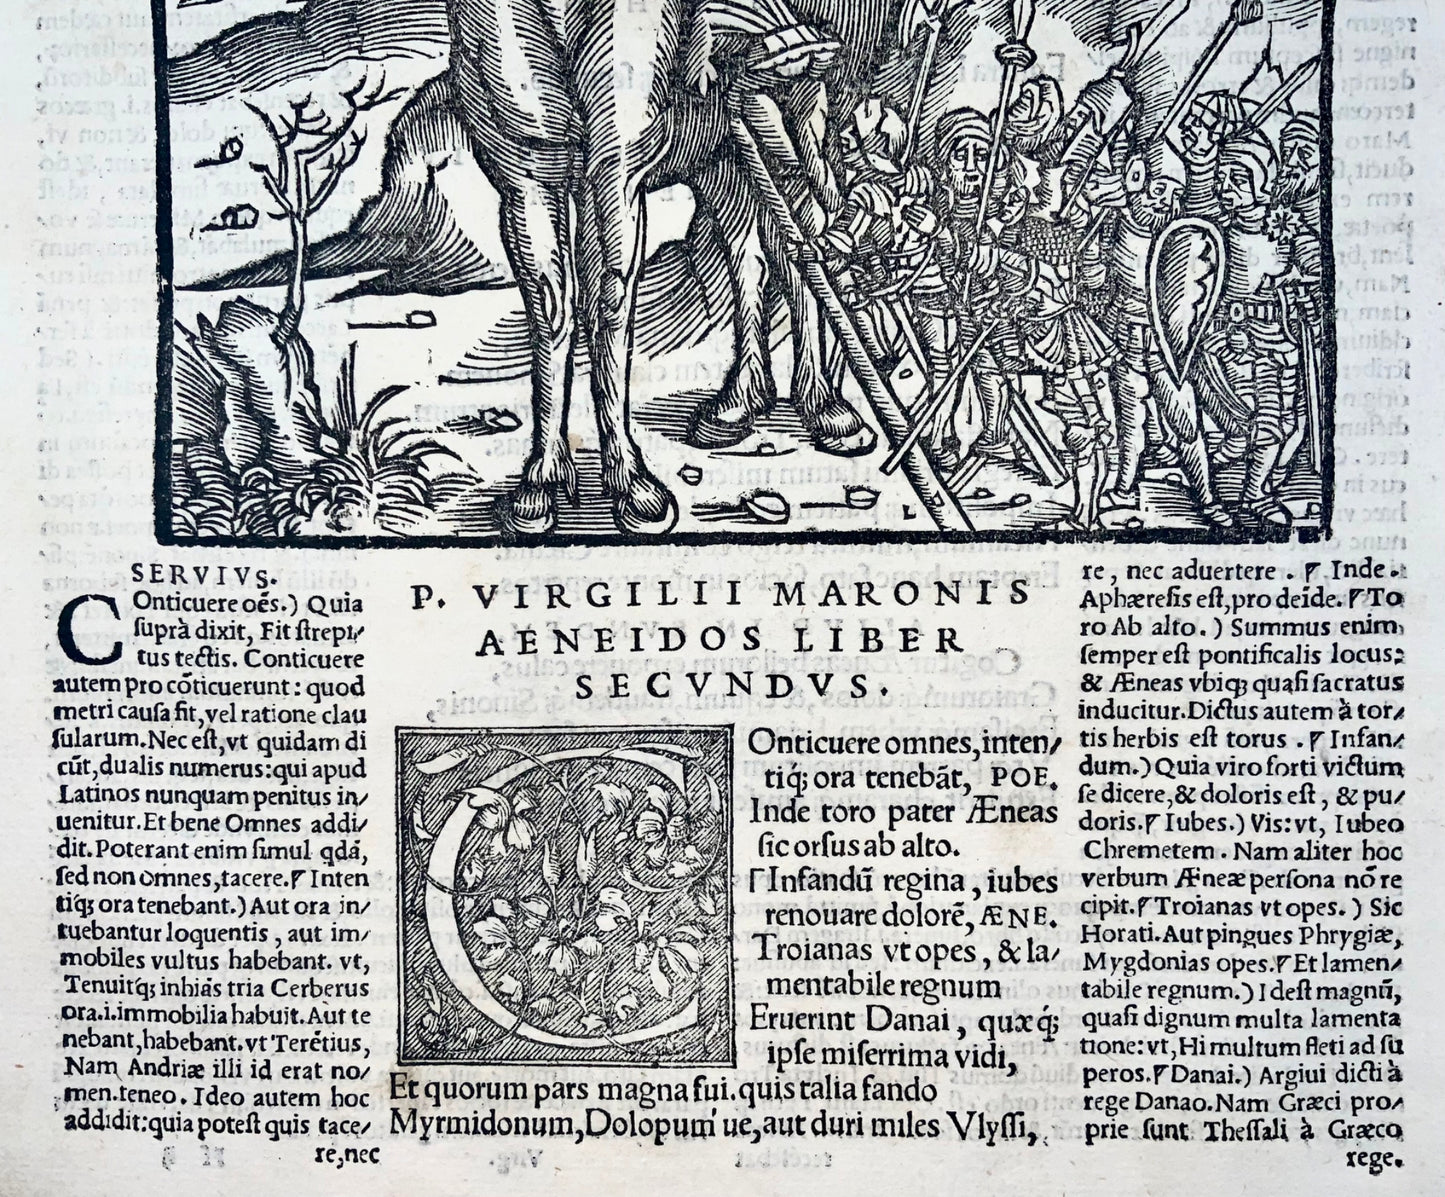 1517 Folio Gruninger woodcut leaf from Virgil’s Aeneid, Trojan Horse, mythology, master engraving